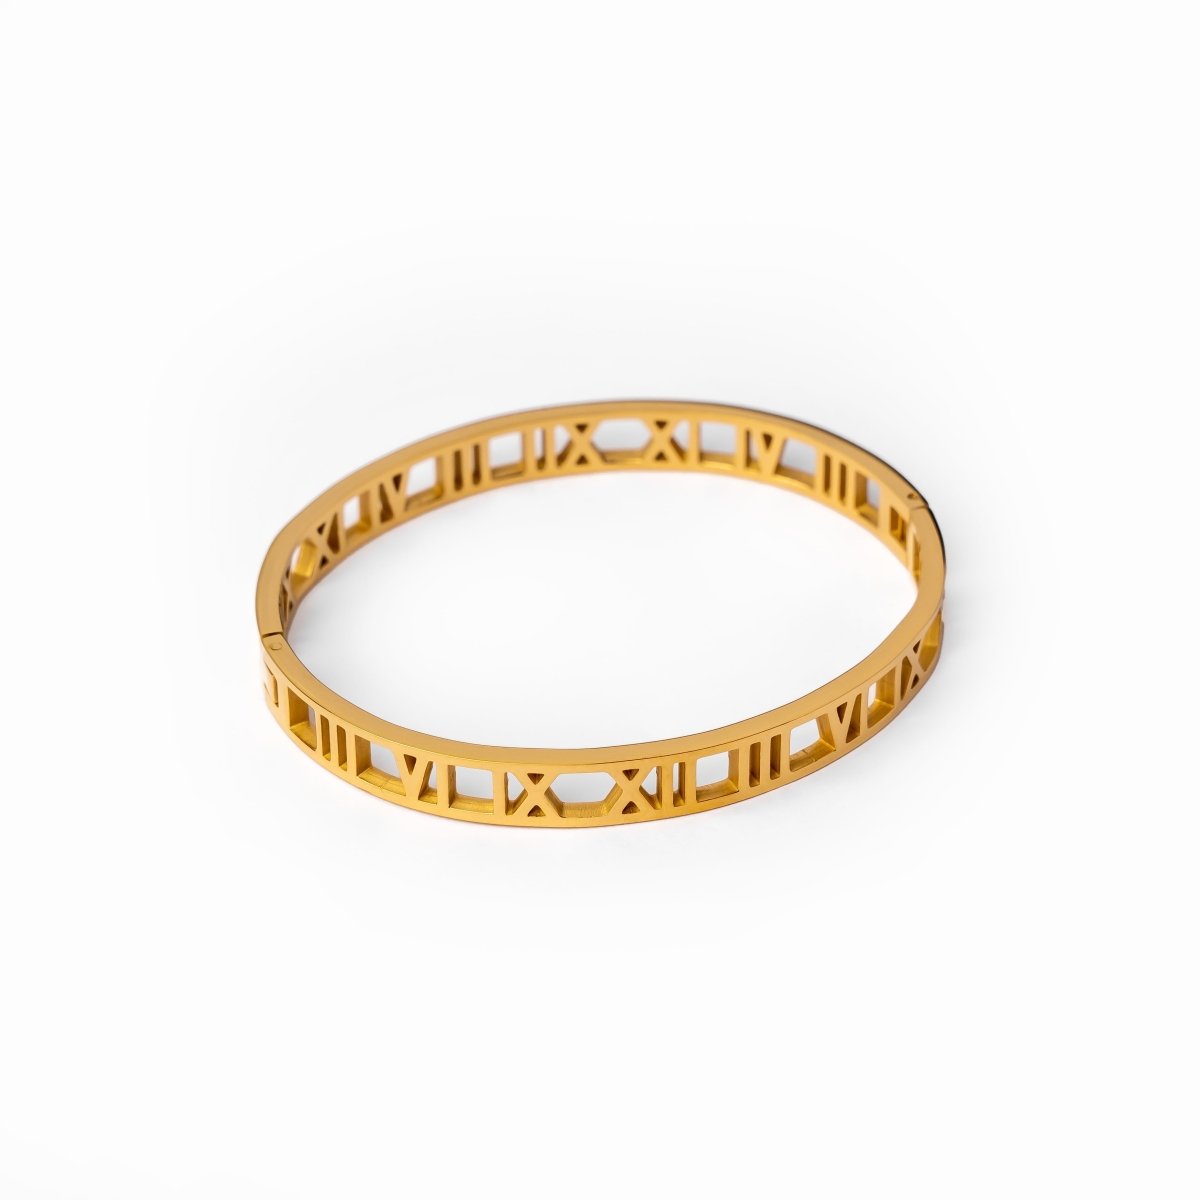 Bracelete Algarismos Vazados Banhado em Ouro 18K - Murano Joias